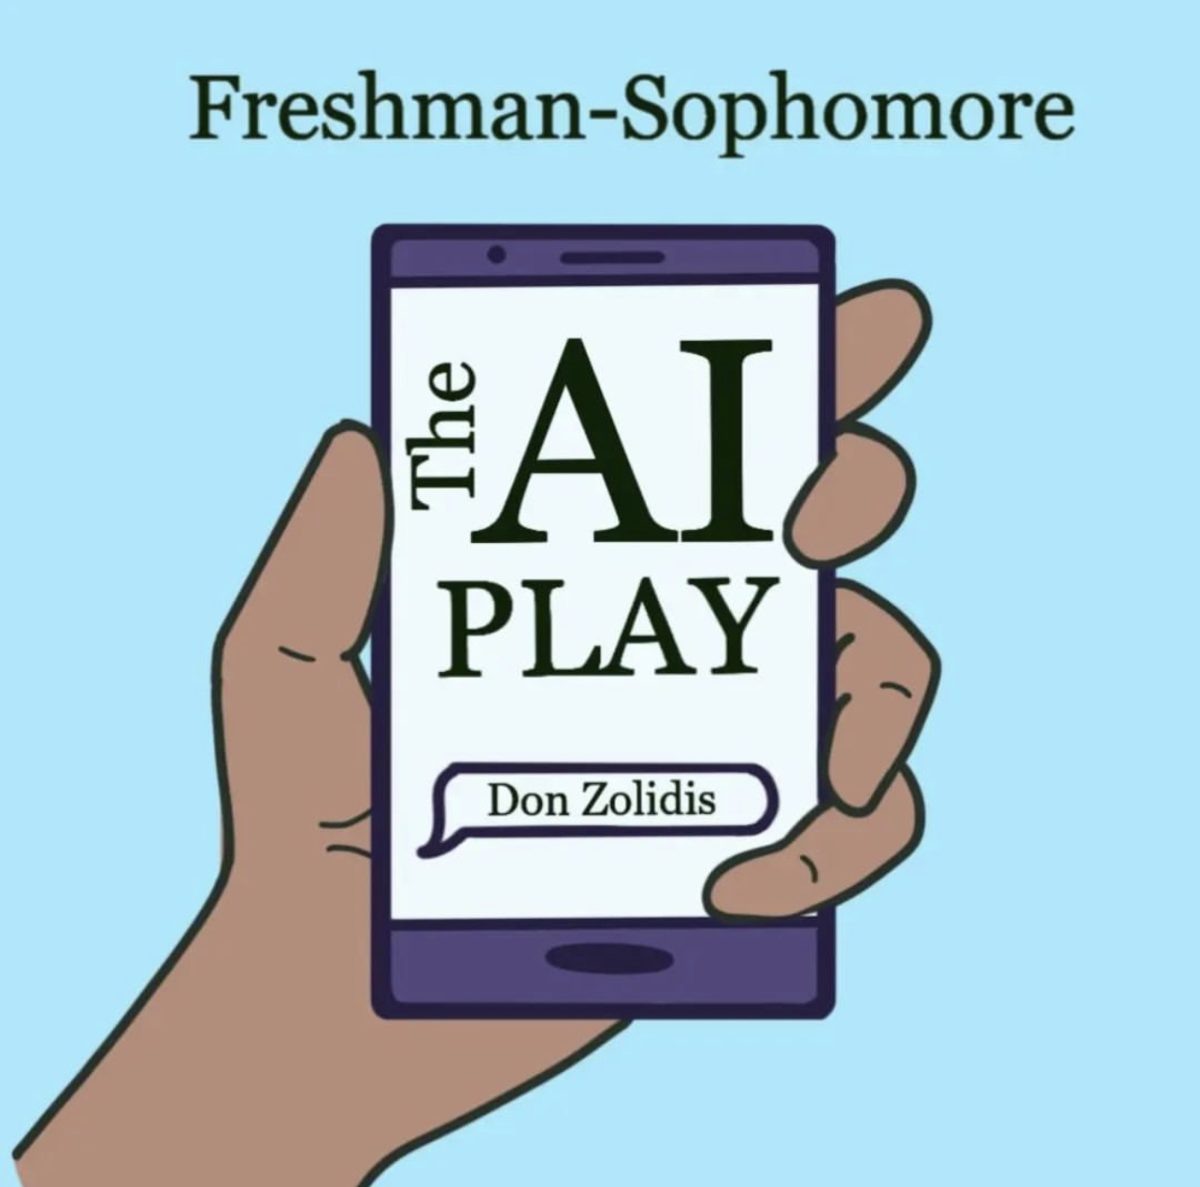 The AI Play